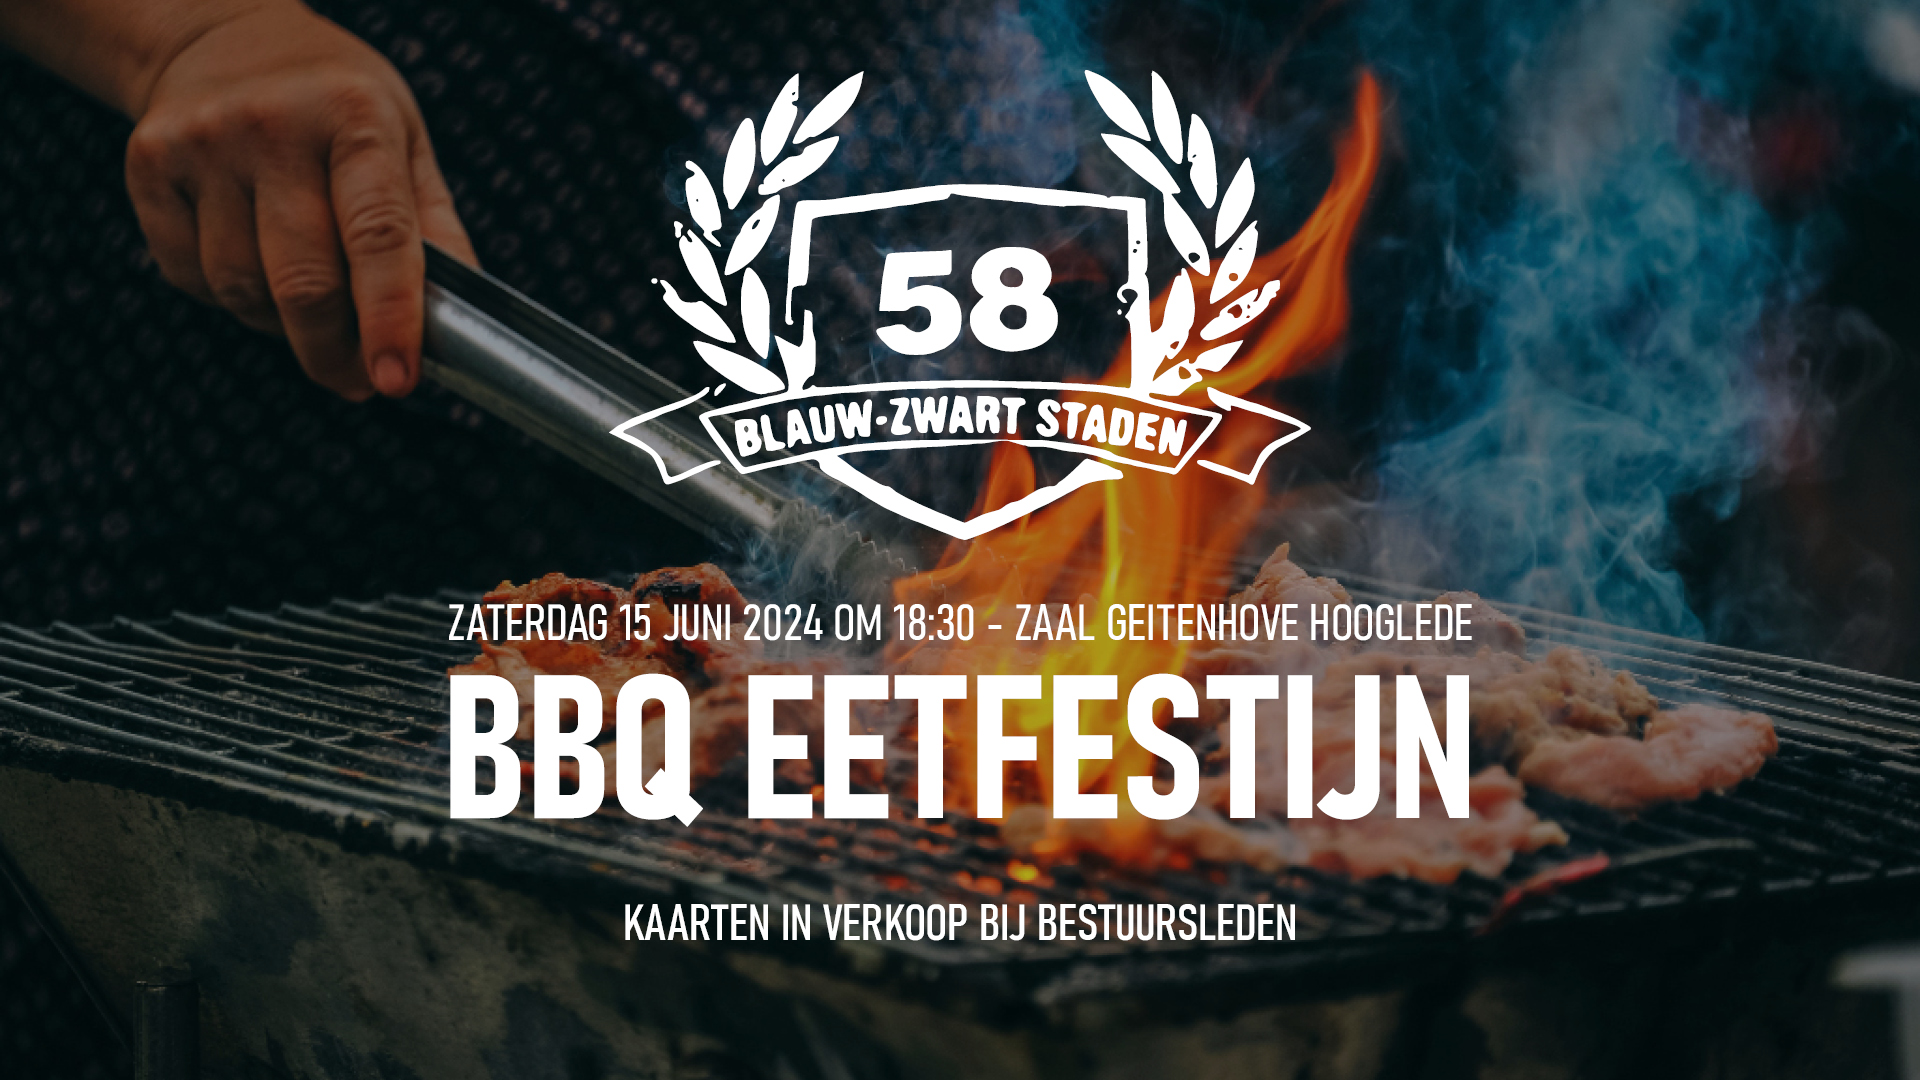 BBQ Eetfestijn Blauw-Zwart Staden 58